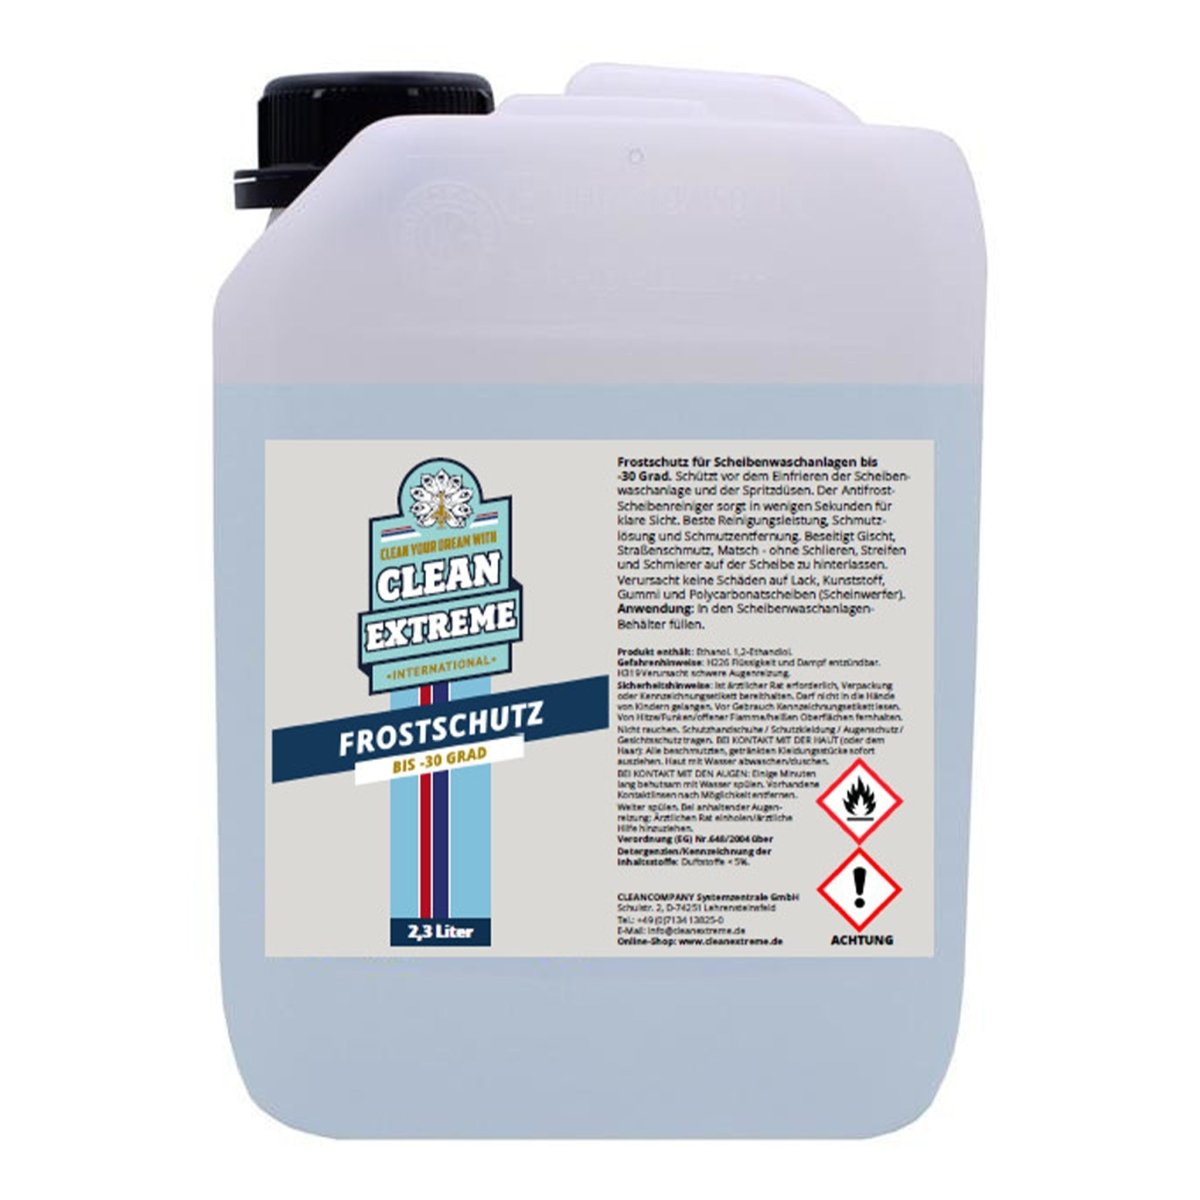 Frostschutzmittel Scheibenwaschanlage (-30 Grad) - 2,3 Liter - CLEANEXTREME